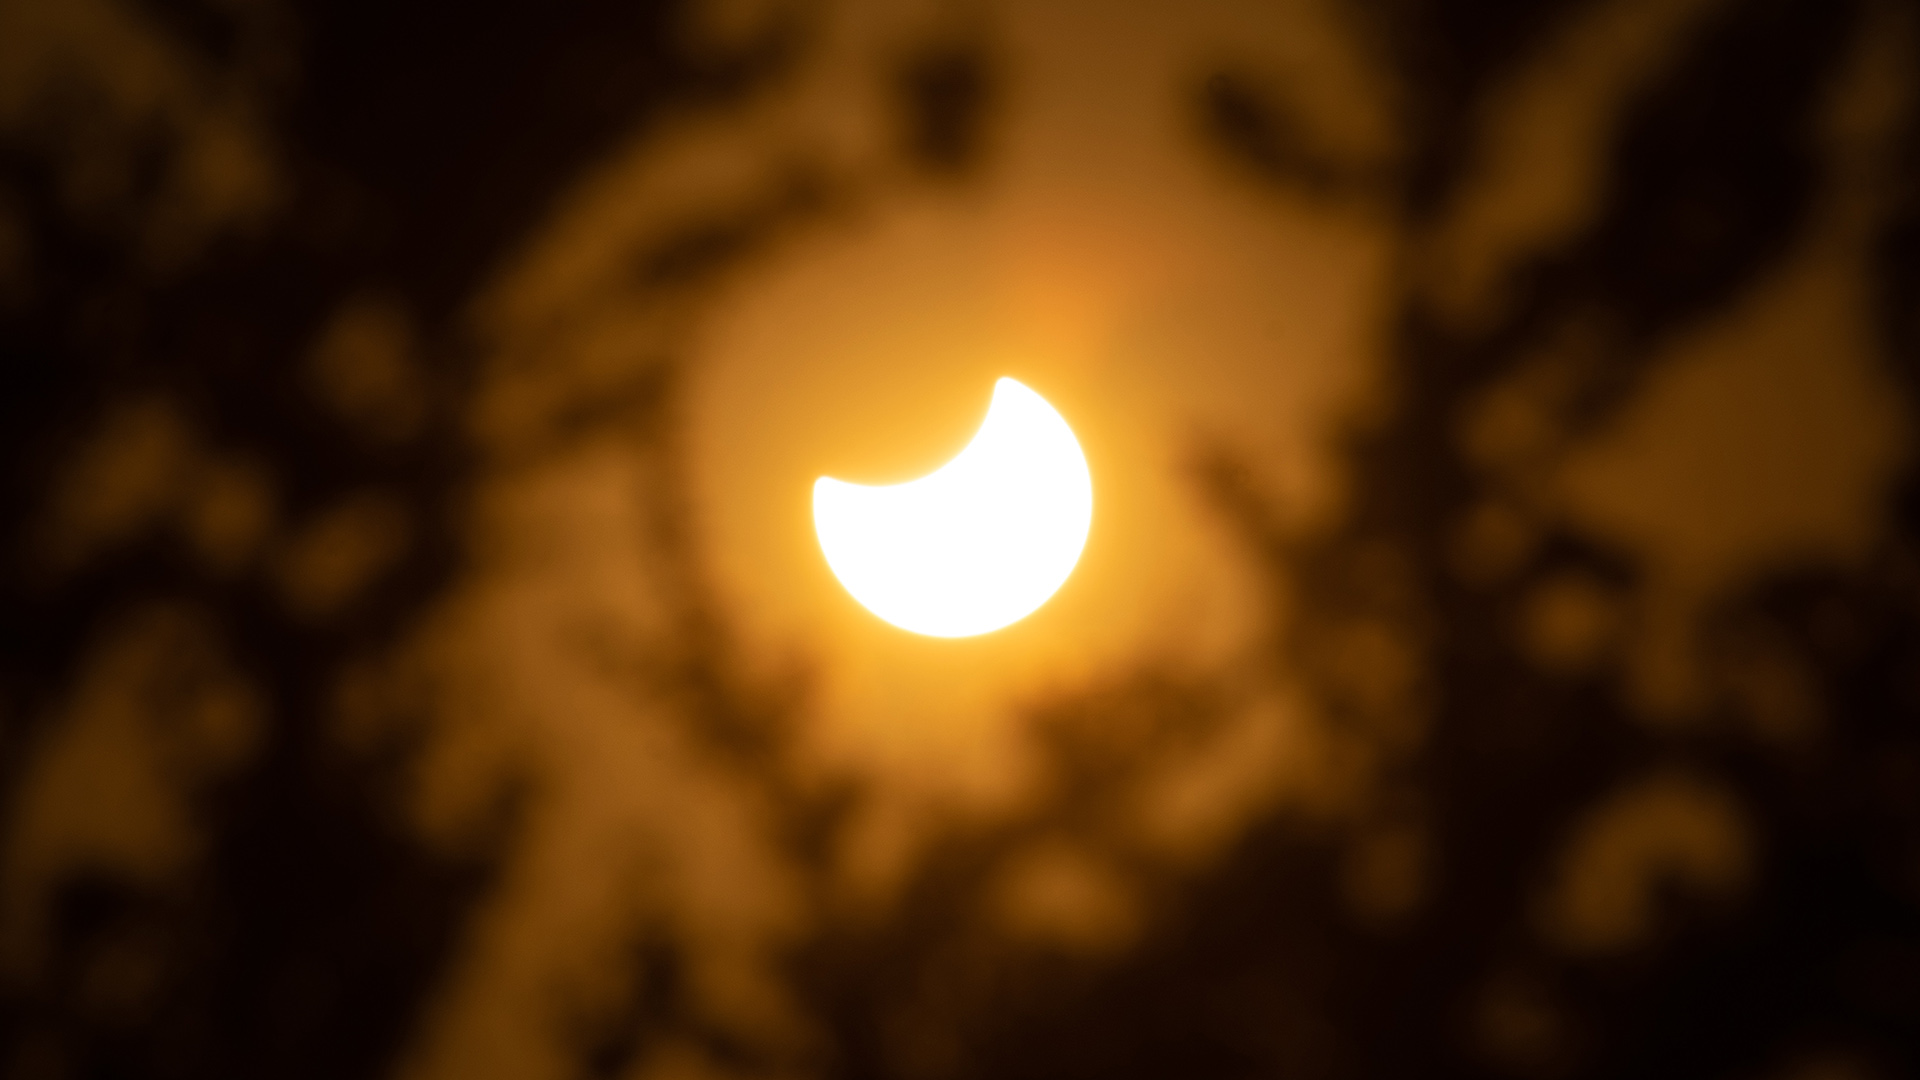 Eclipse solar parcial: cuando el día oscurece repentinamente